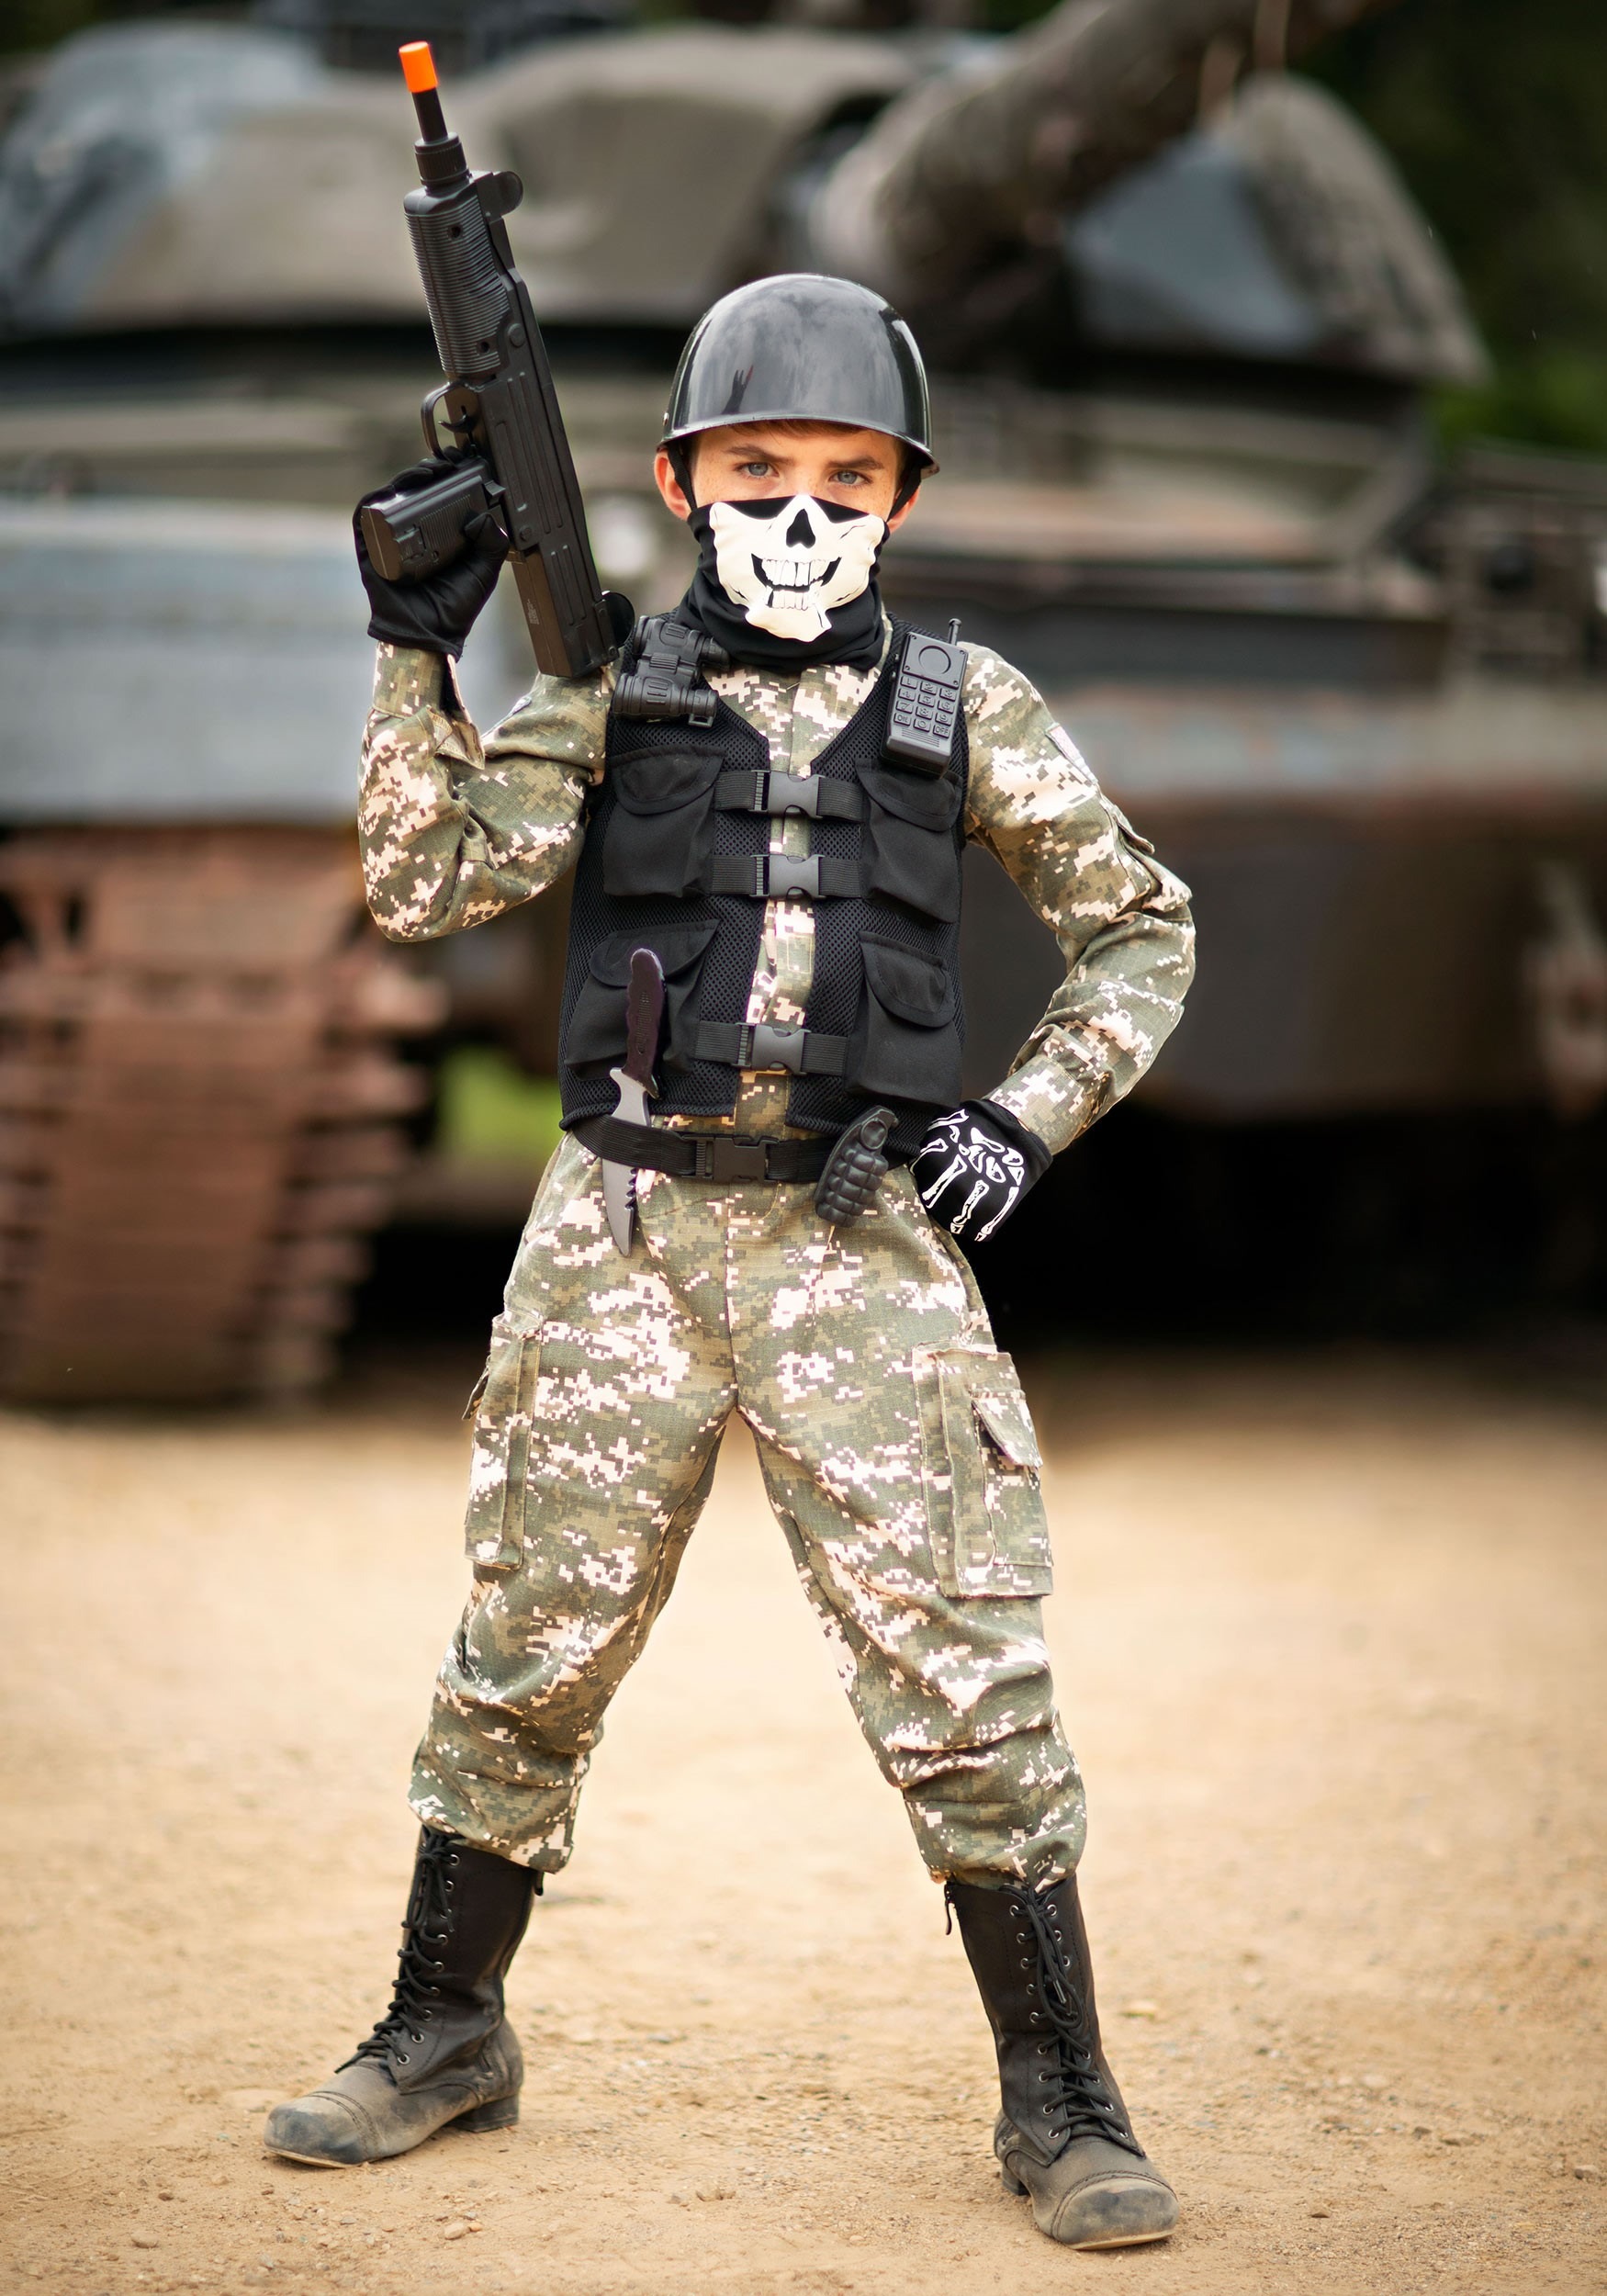 Disfraz de soldado de batalla para niños